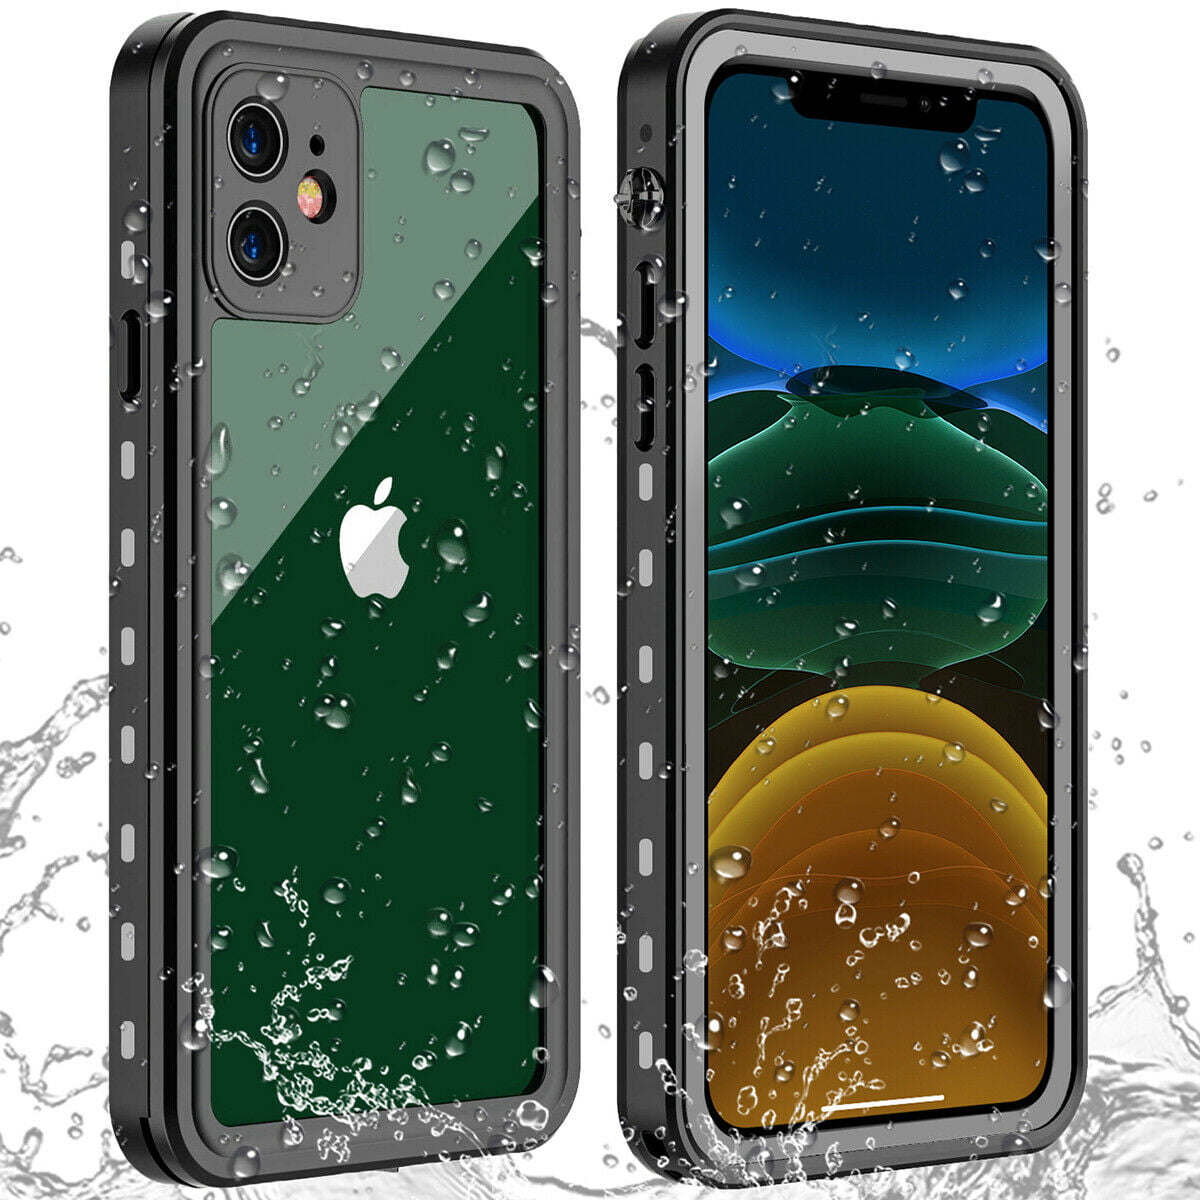 Redpepper Ip68 Waterproof Shockproof Case For Apple Iphone 11 11 Pro 11pro Max Walmart Com